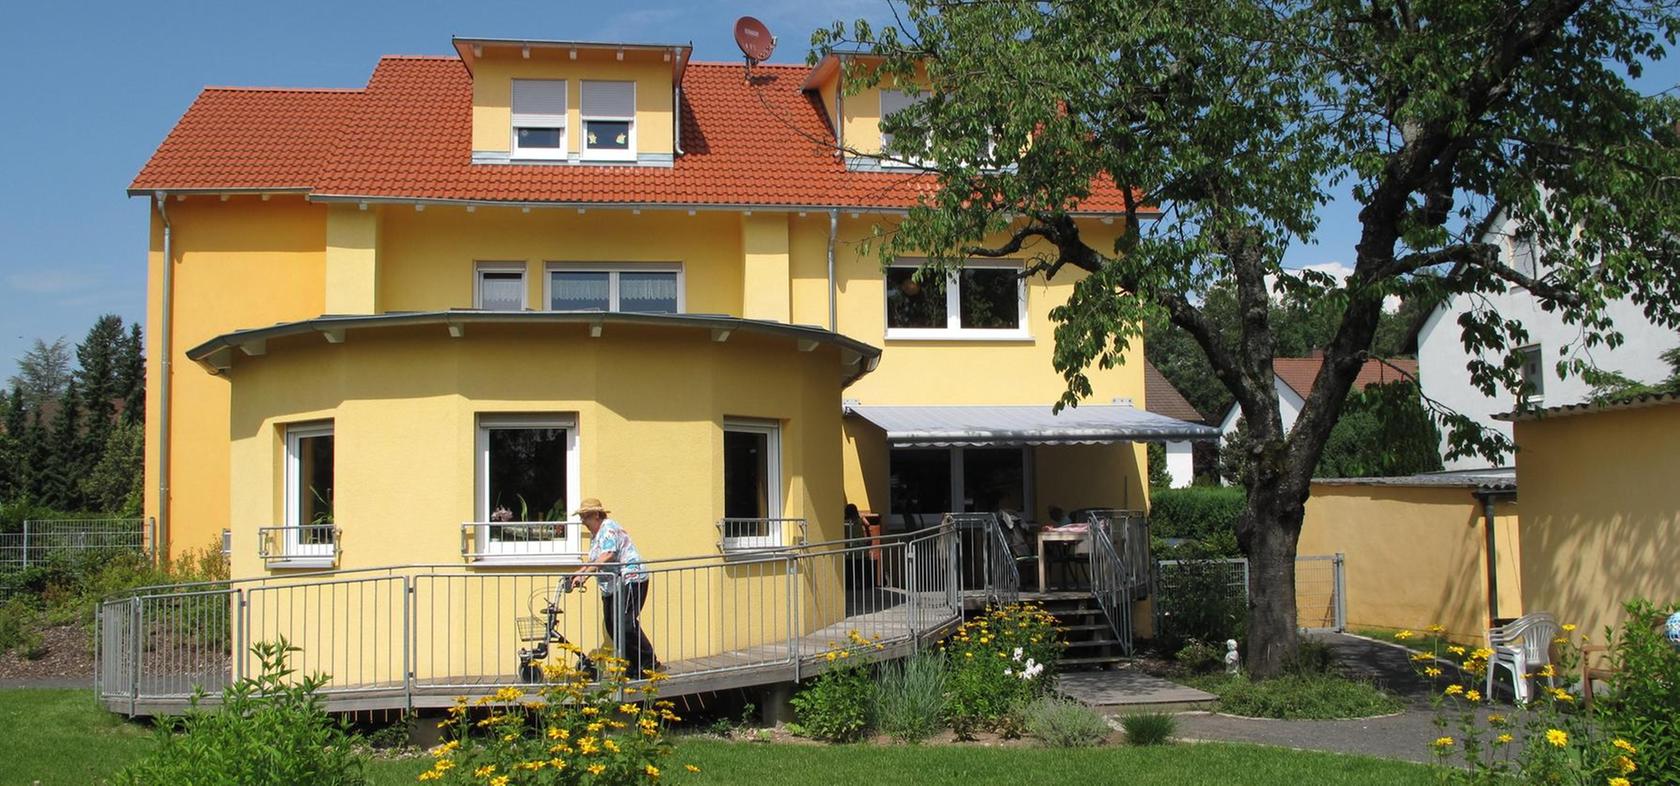 Demenz-WG in Erlangen: Fast wie eine Familie